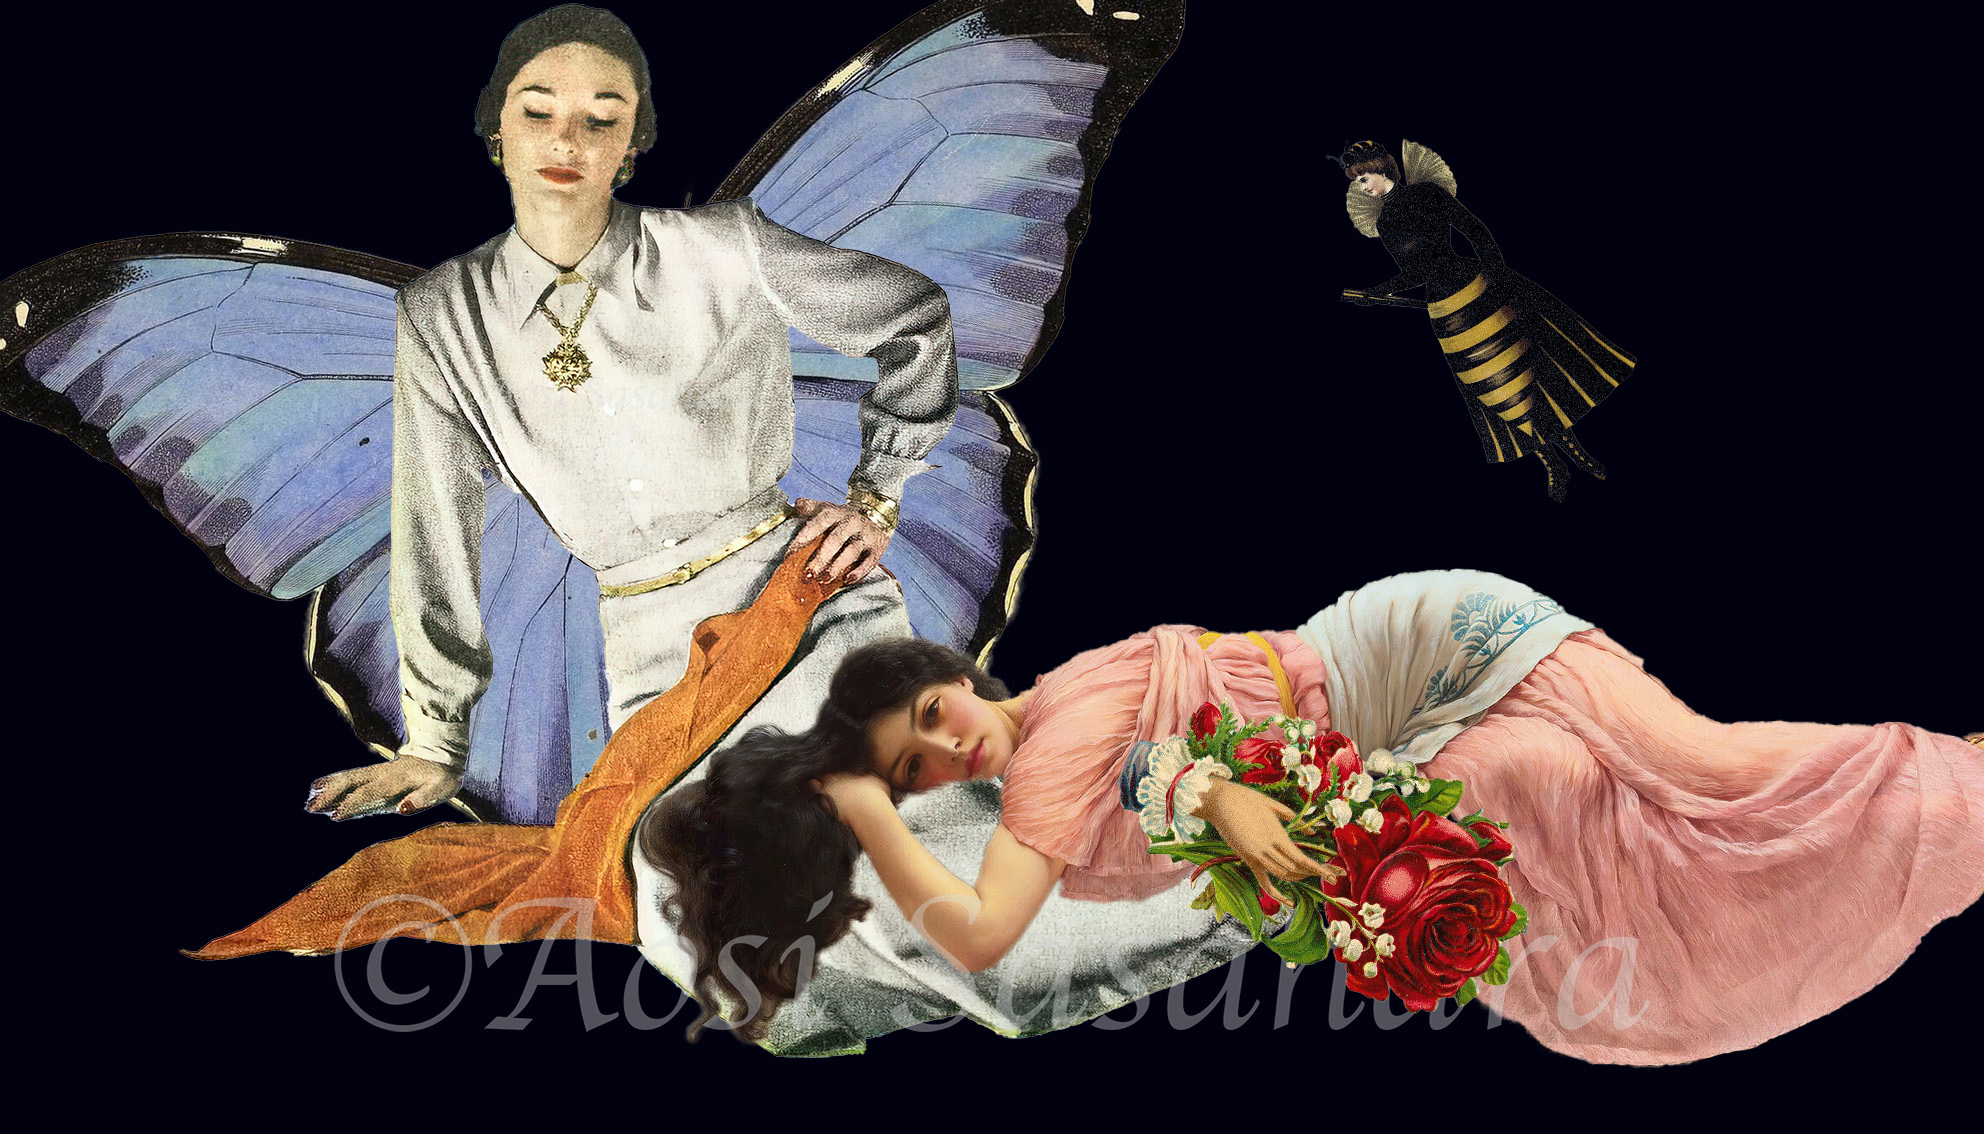 蝶の女に膝枕してもらっている人間の女性を見つめている蜂女